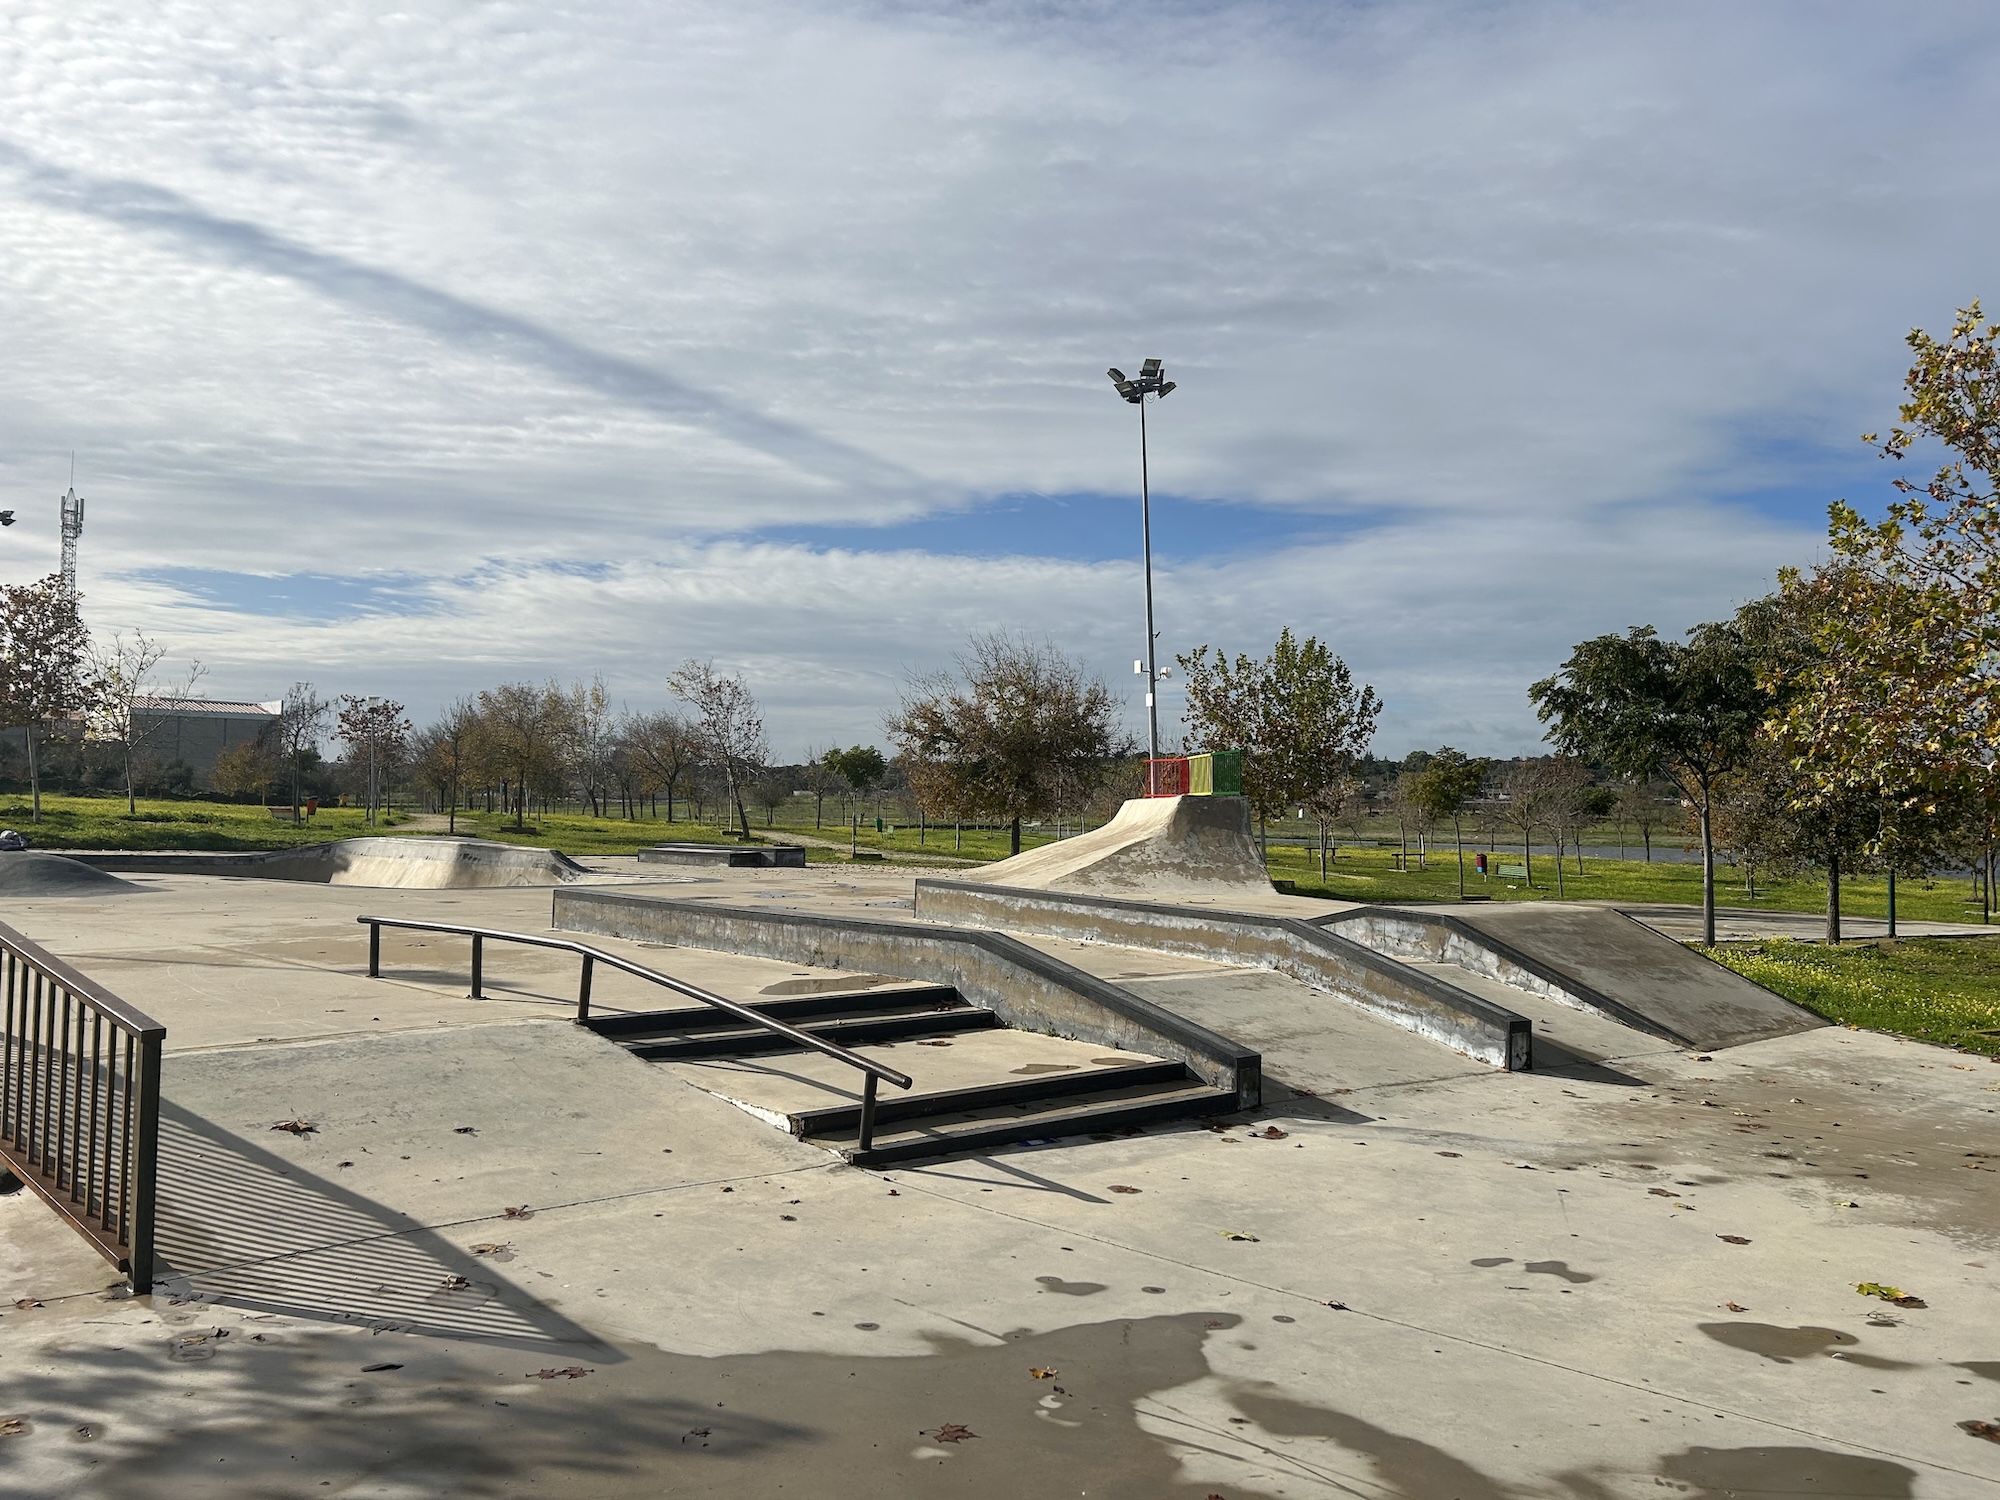 Casar de Cáceres skatepark